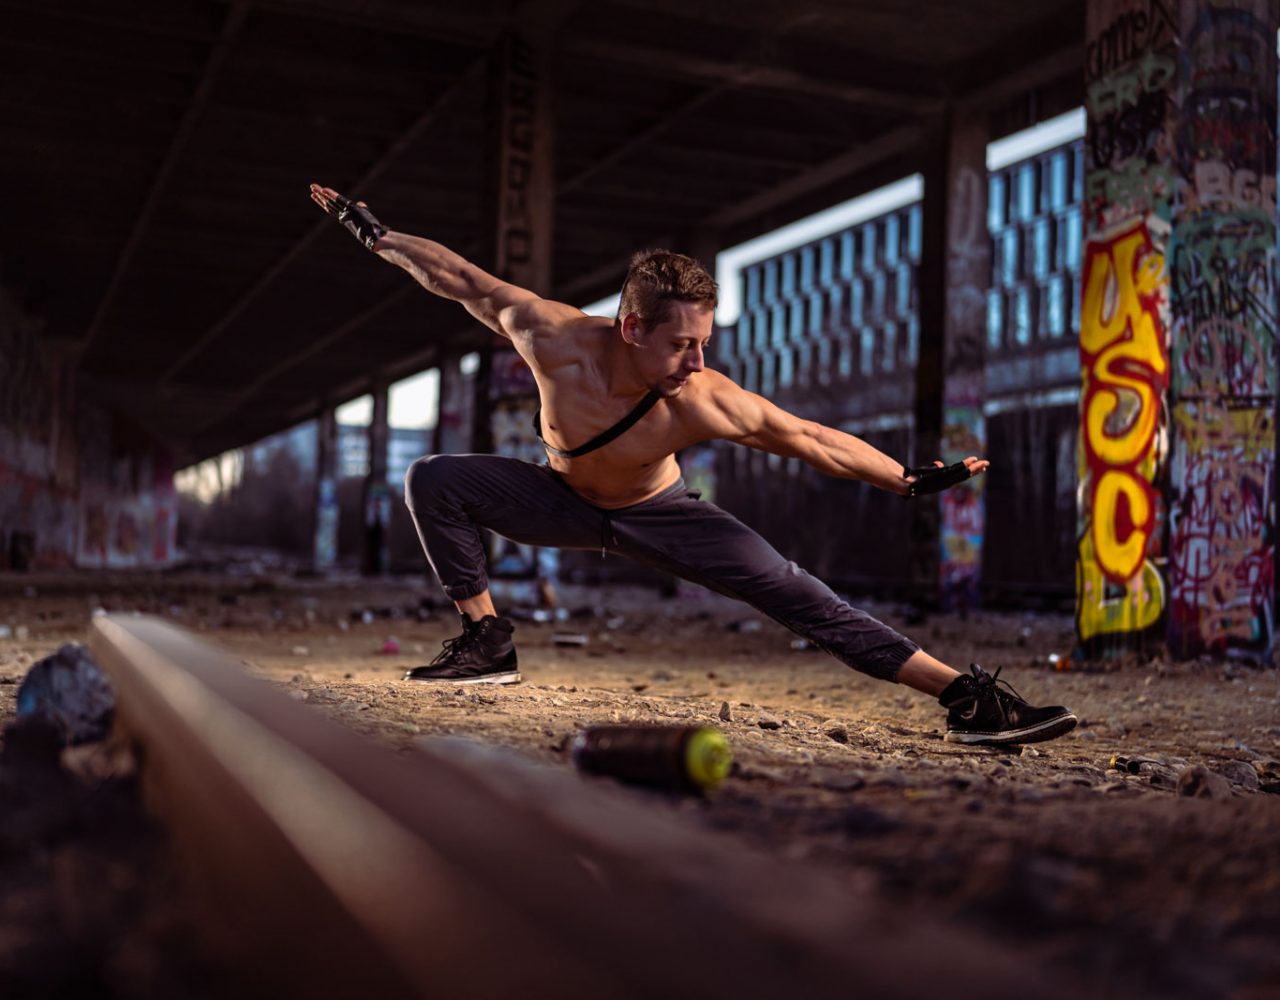 Sportler in dynamischer, tänzerischer Pose an einem verlassenen Bahnhof